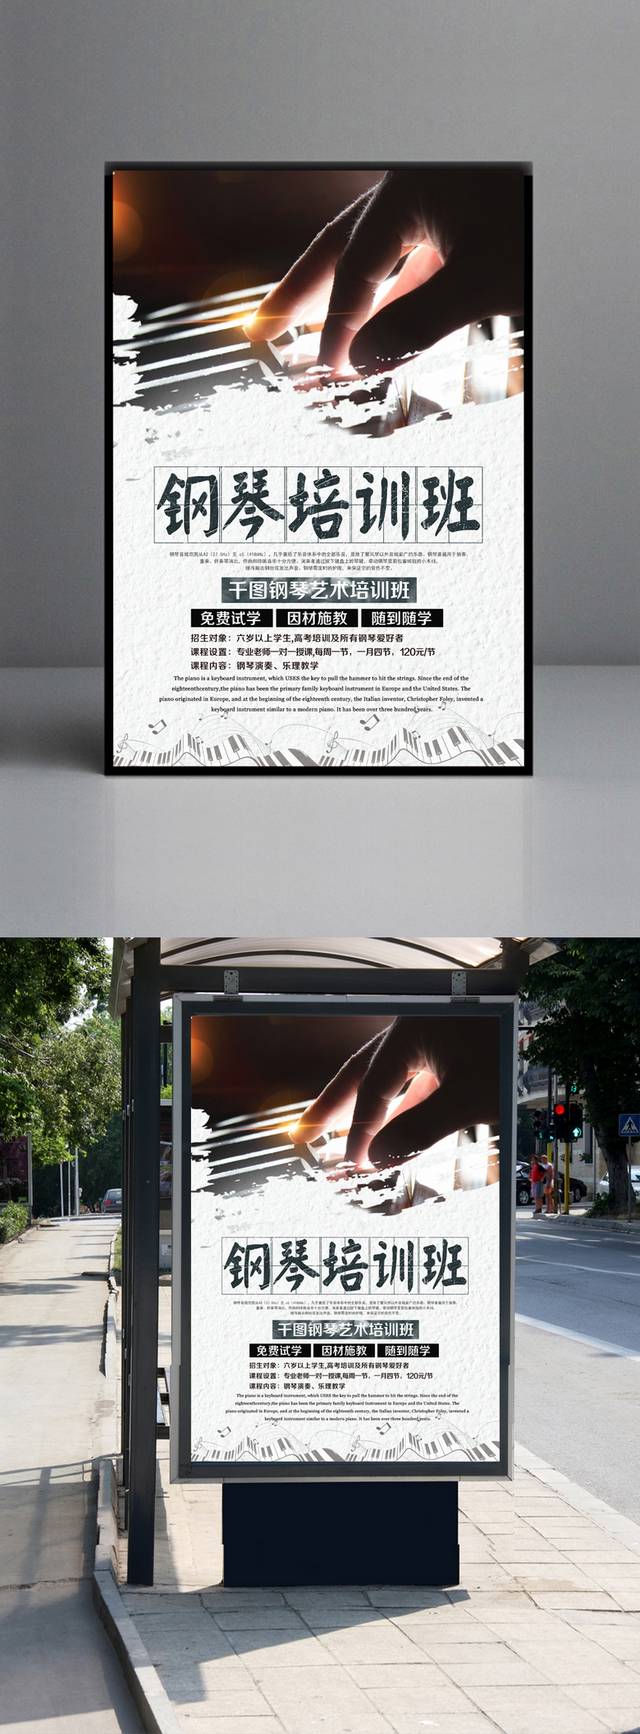 钢琴培训班海报免费下载